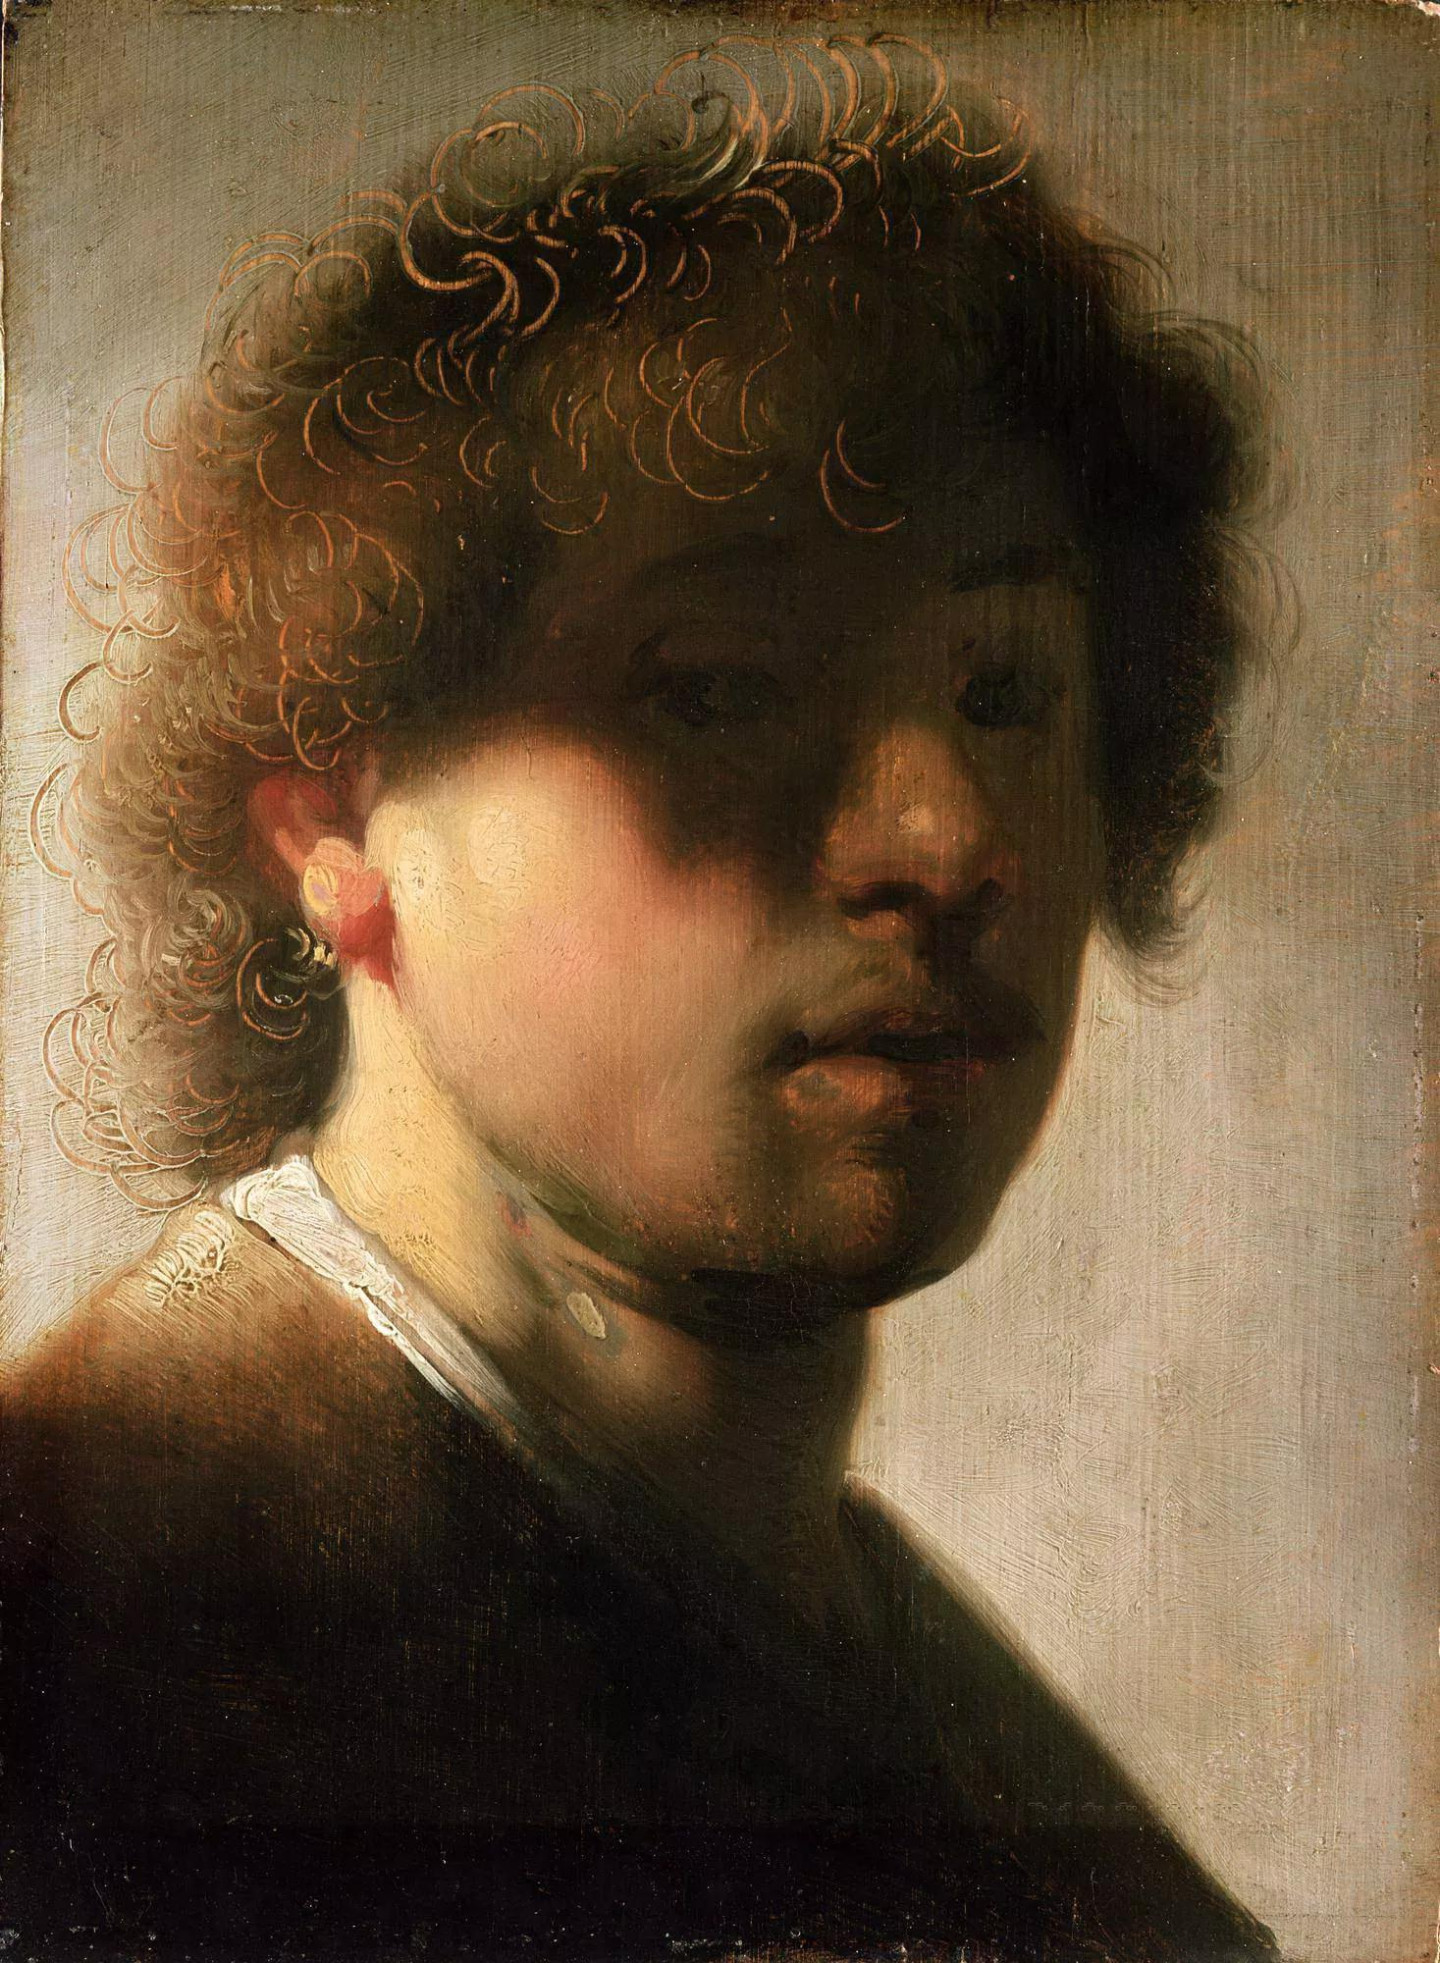 Неизвестный художник, копия автопортрета Рембрандта. Картинная галерея, Кассель